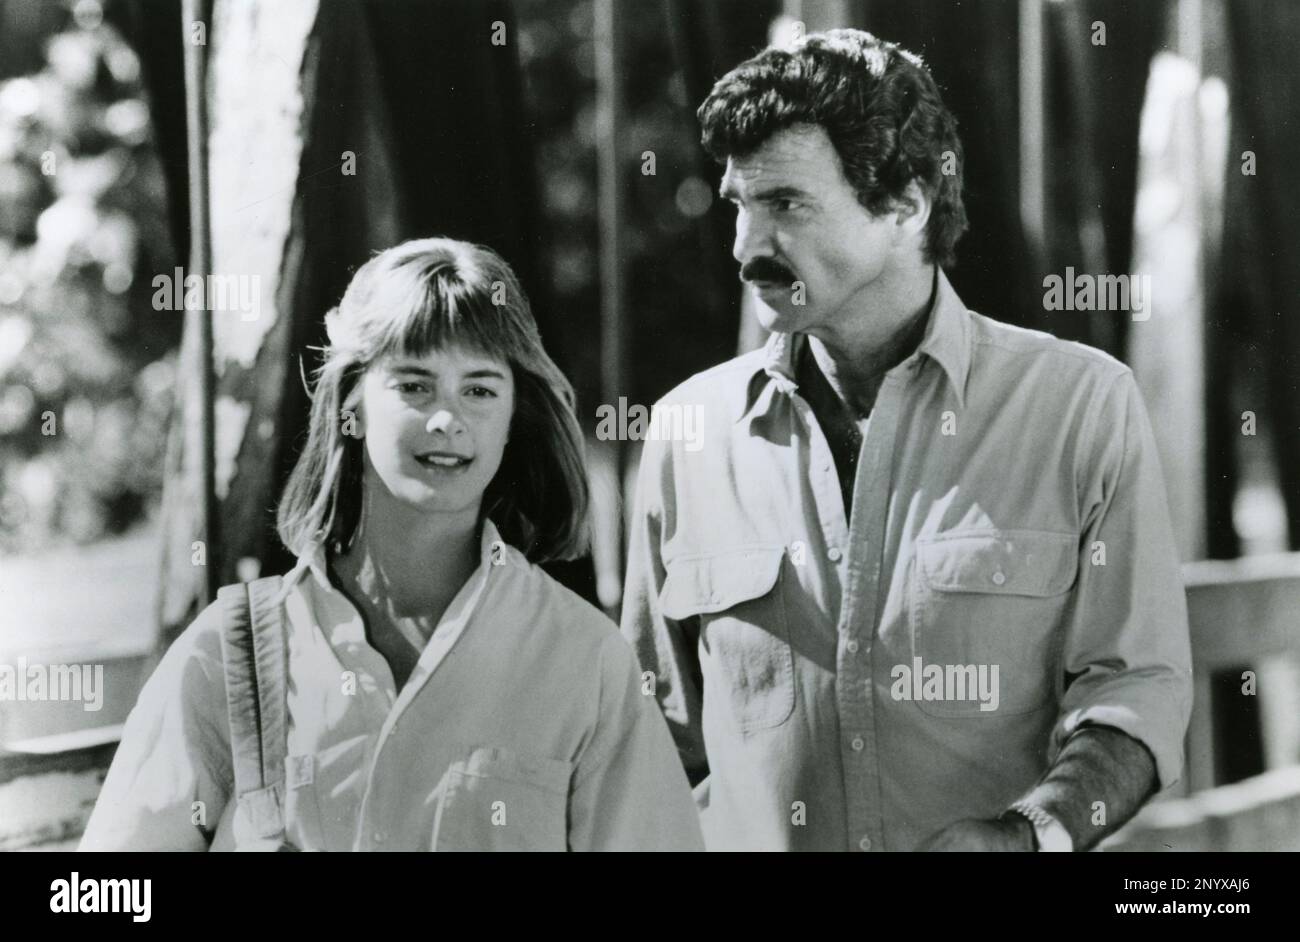 L'actrice Cynthia Gibb et l'acteur Burt Reynolds dans le film Malone, USA 1987 Banque D'Images